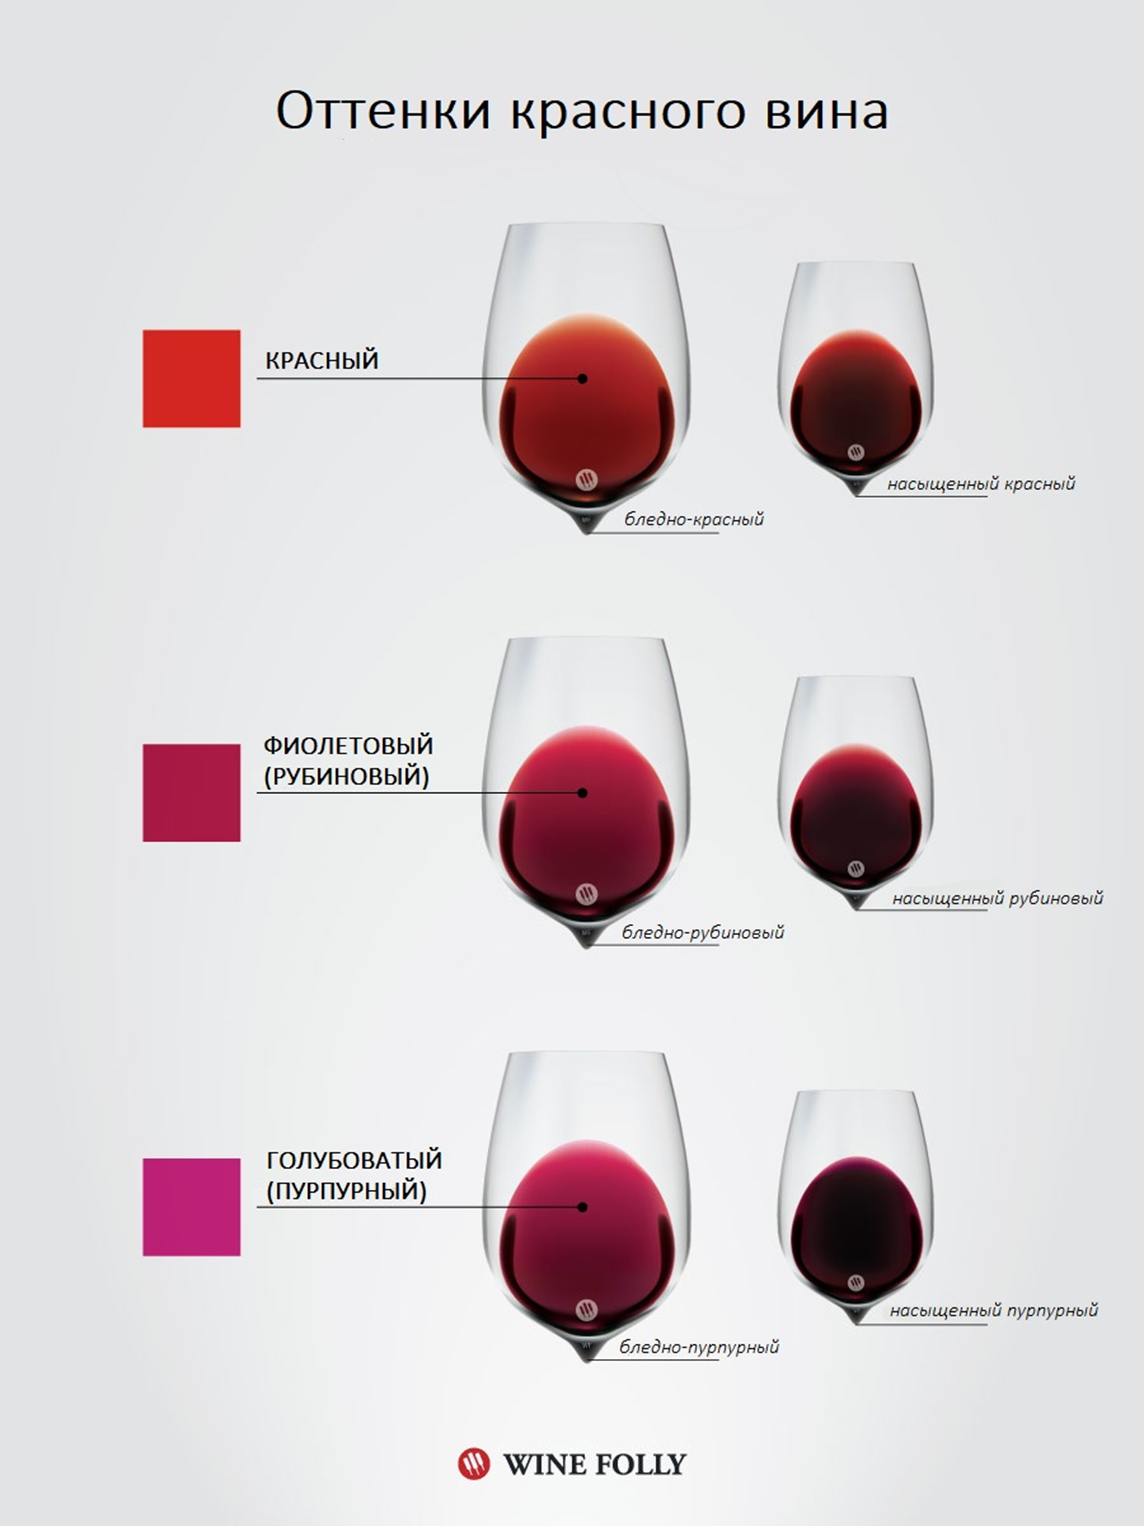 Различные оттенки вина (от красного до голубоватого) коррелируют с кислотностью напитка